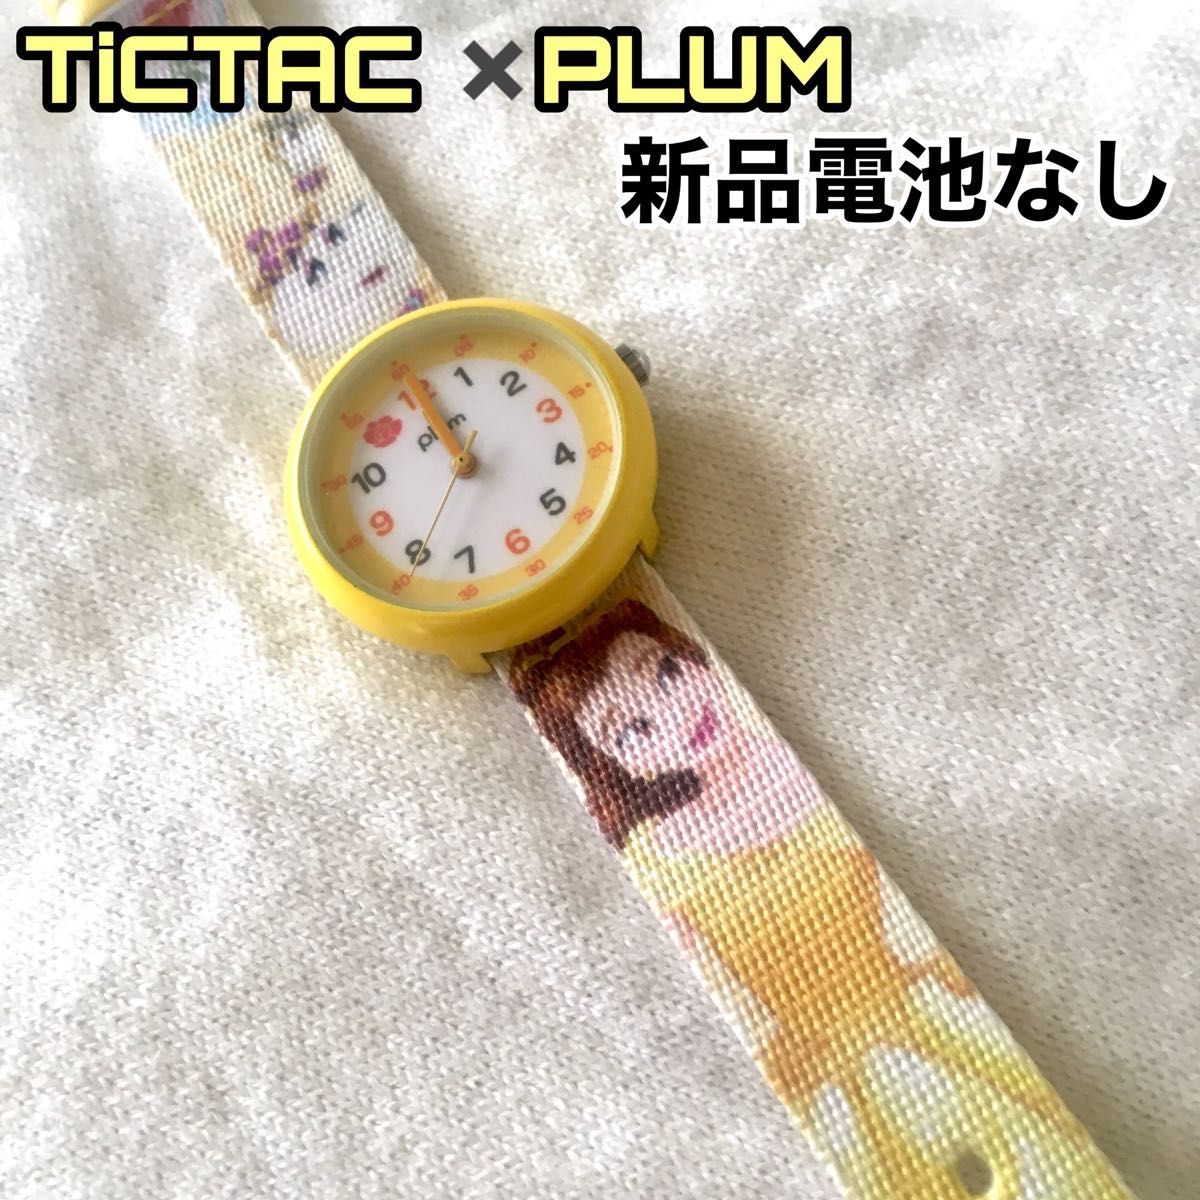 Paypayフリマ Tictac Plum プラム コラボ時計 Disney ディズニー 美女と野獣 ベル 電池なし ディズニー ミッキー 腕時計